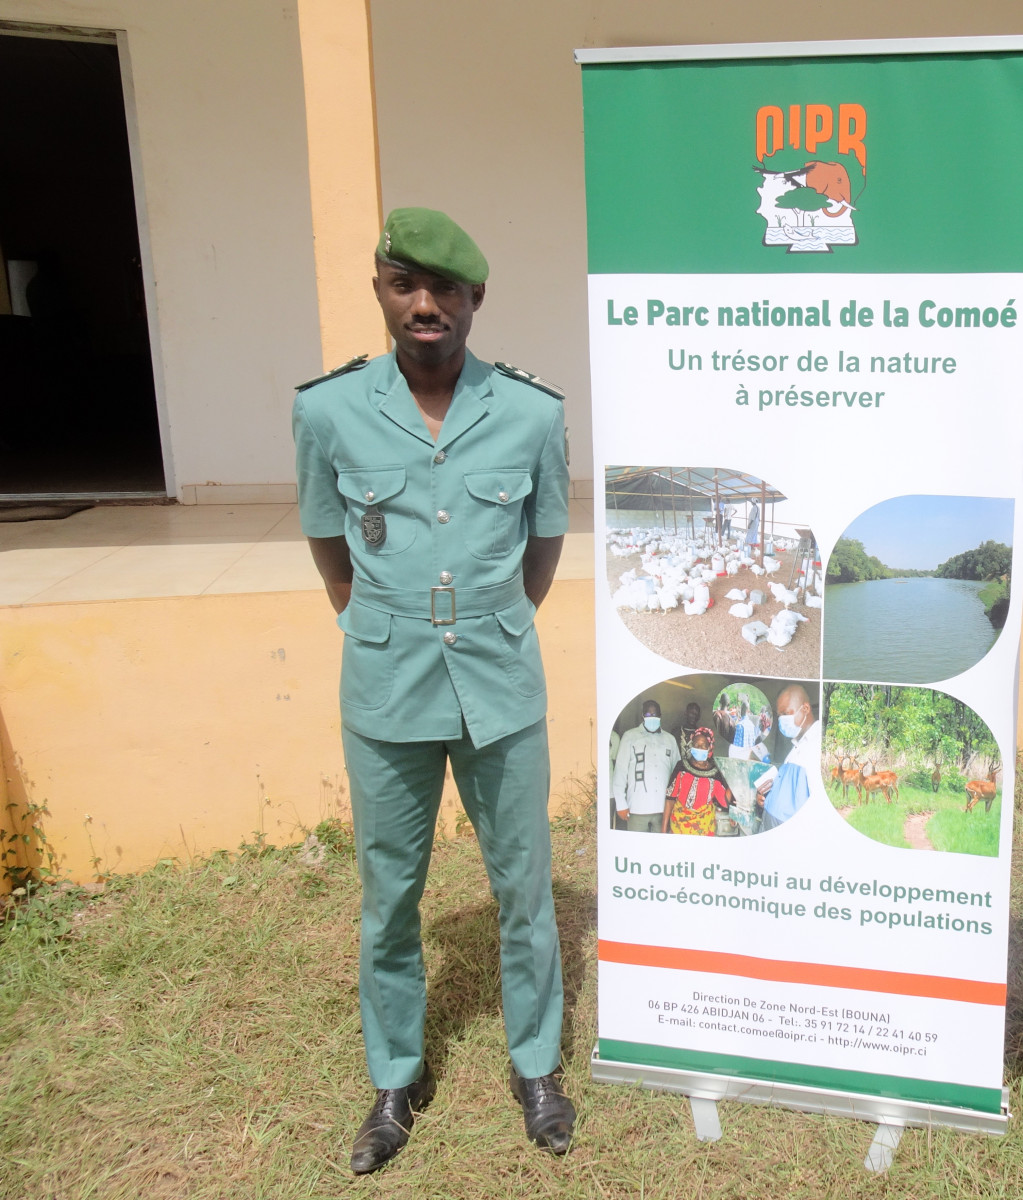 Offossou d’Andous Kissi (Cote d'Ivoire) - 2021 International Ranger Award Winner